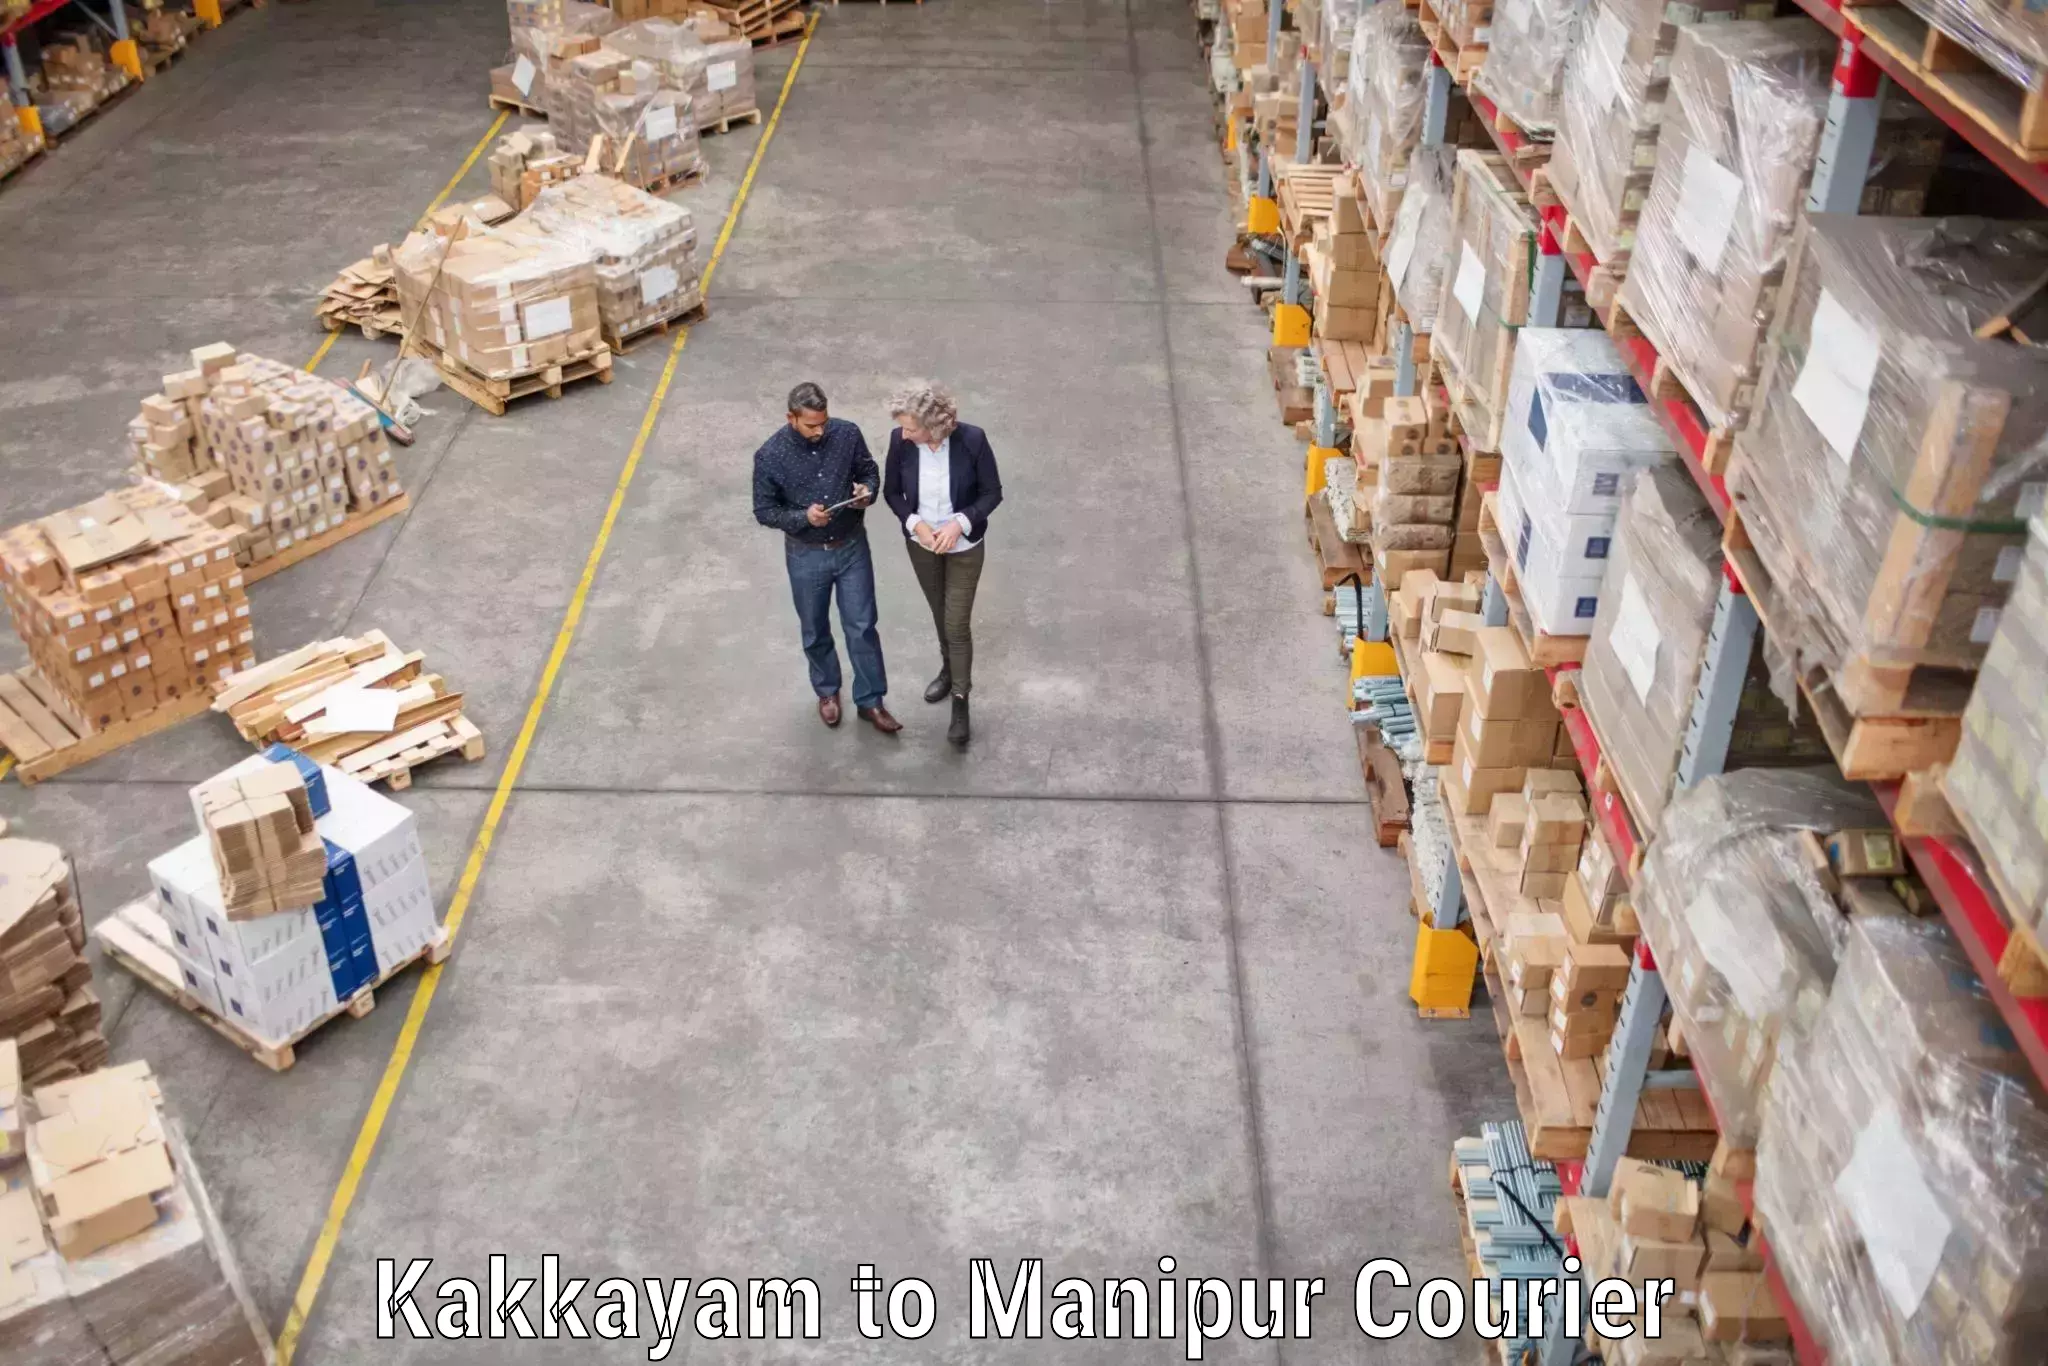 Furniture transport experts Kakkayam to Tadubi